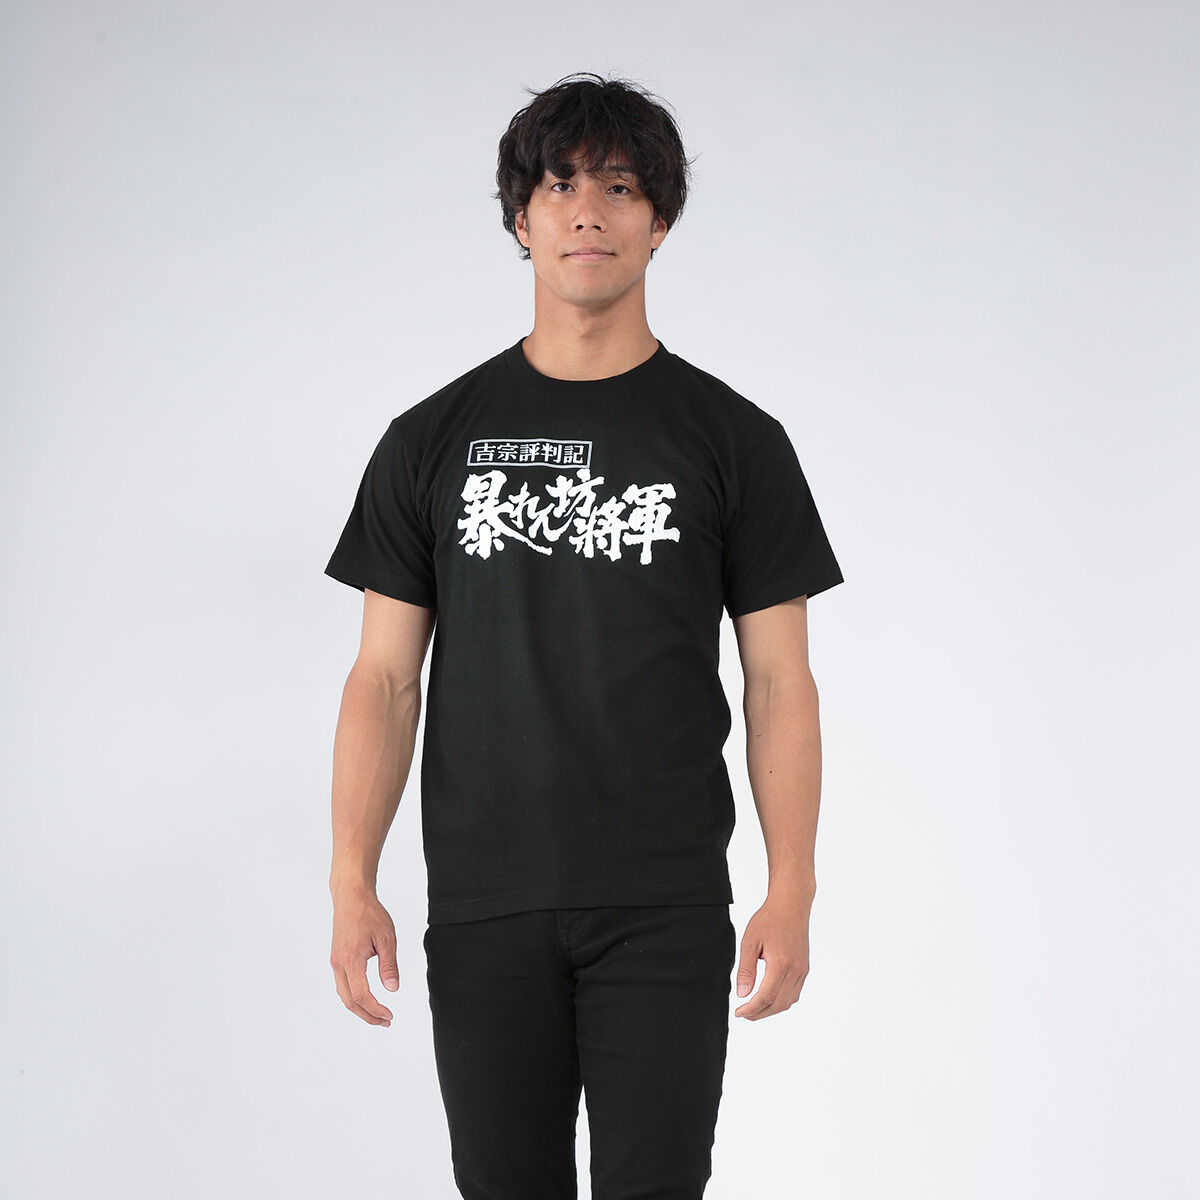 ロゴTシャツシリーズ 暴れん坊将軍 バンダイナムコグループ公式通販サイト